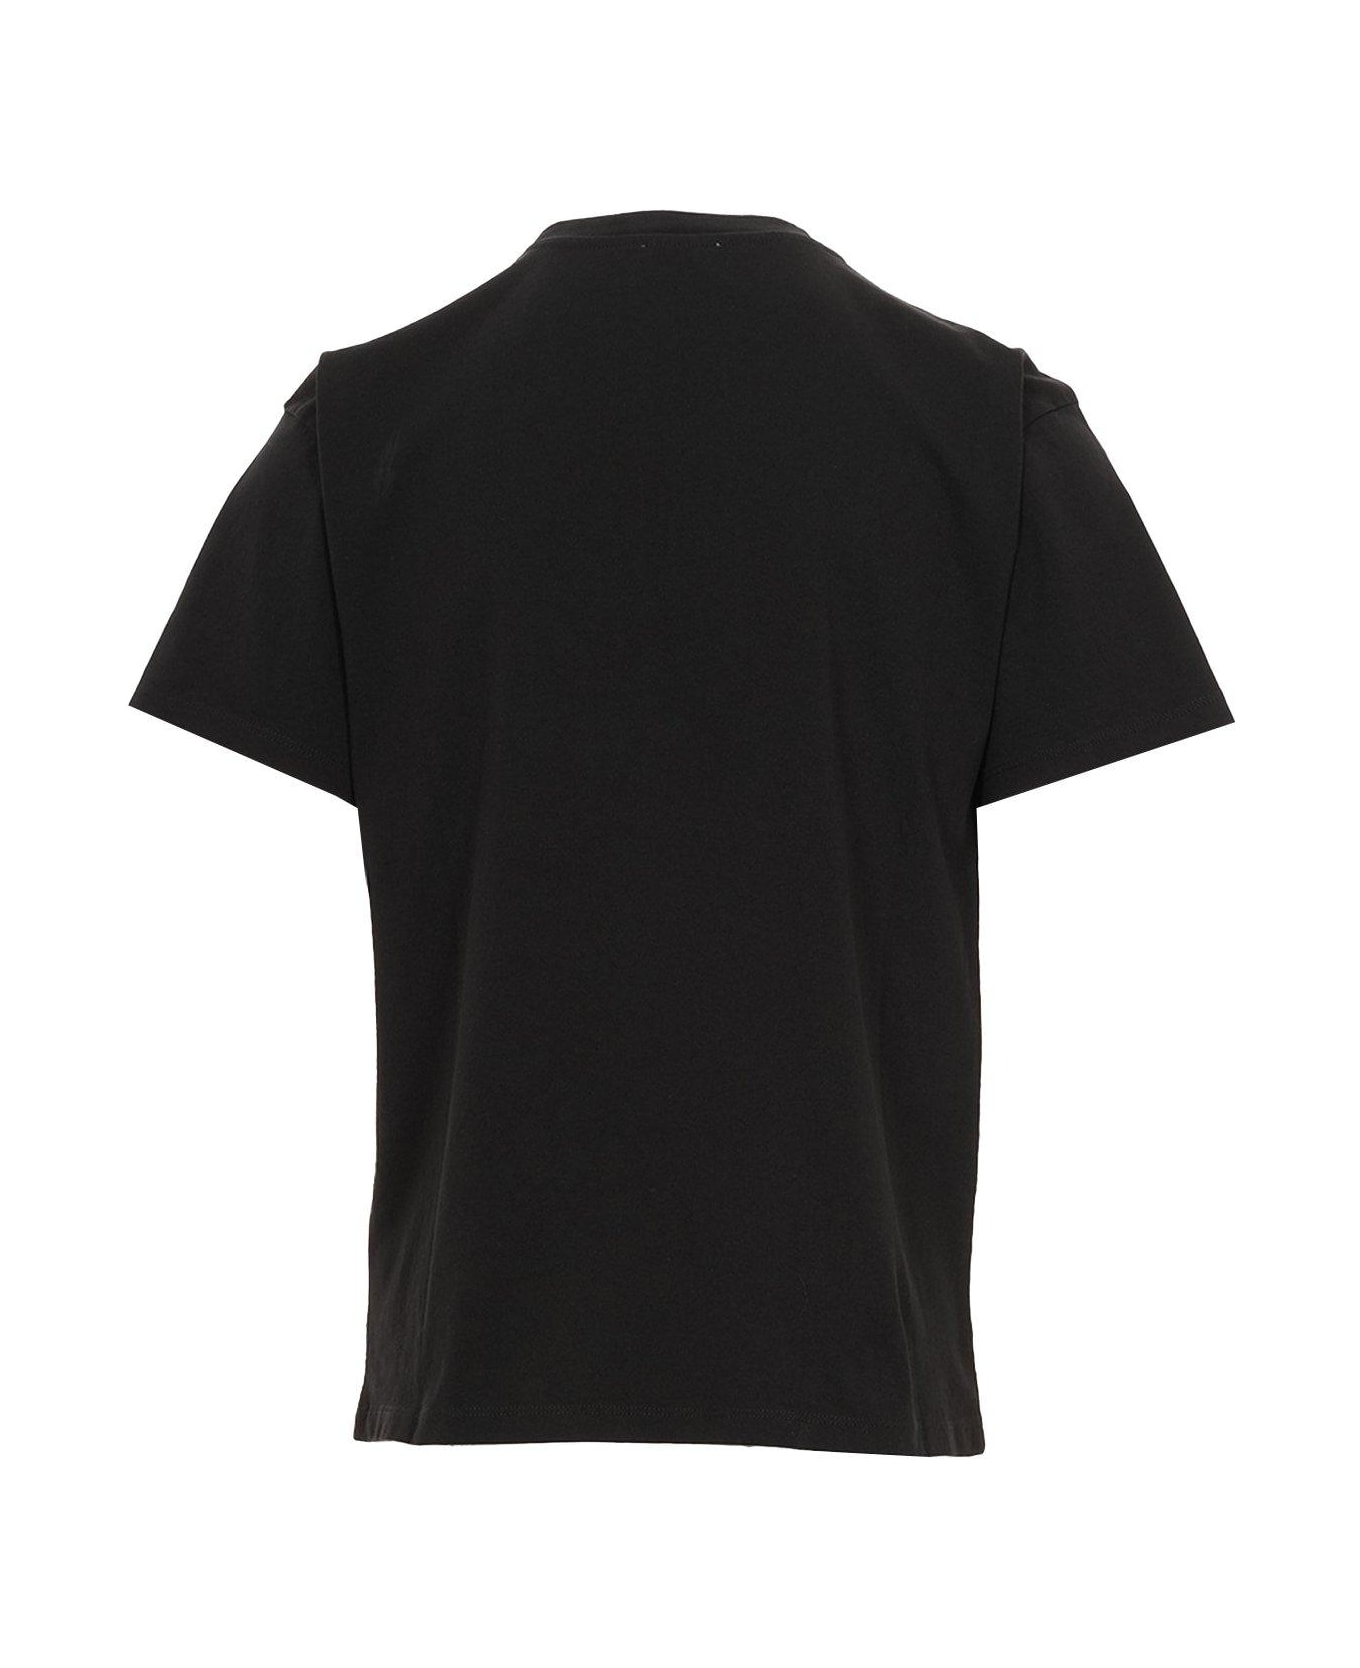 Aries Logo Printed Jersey T-shirt - Black